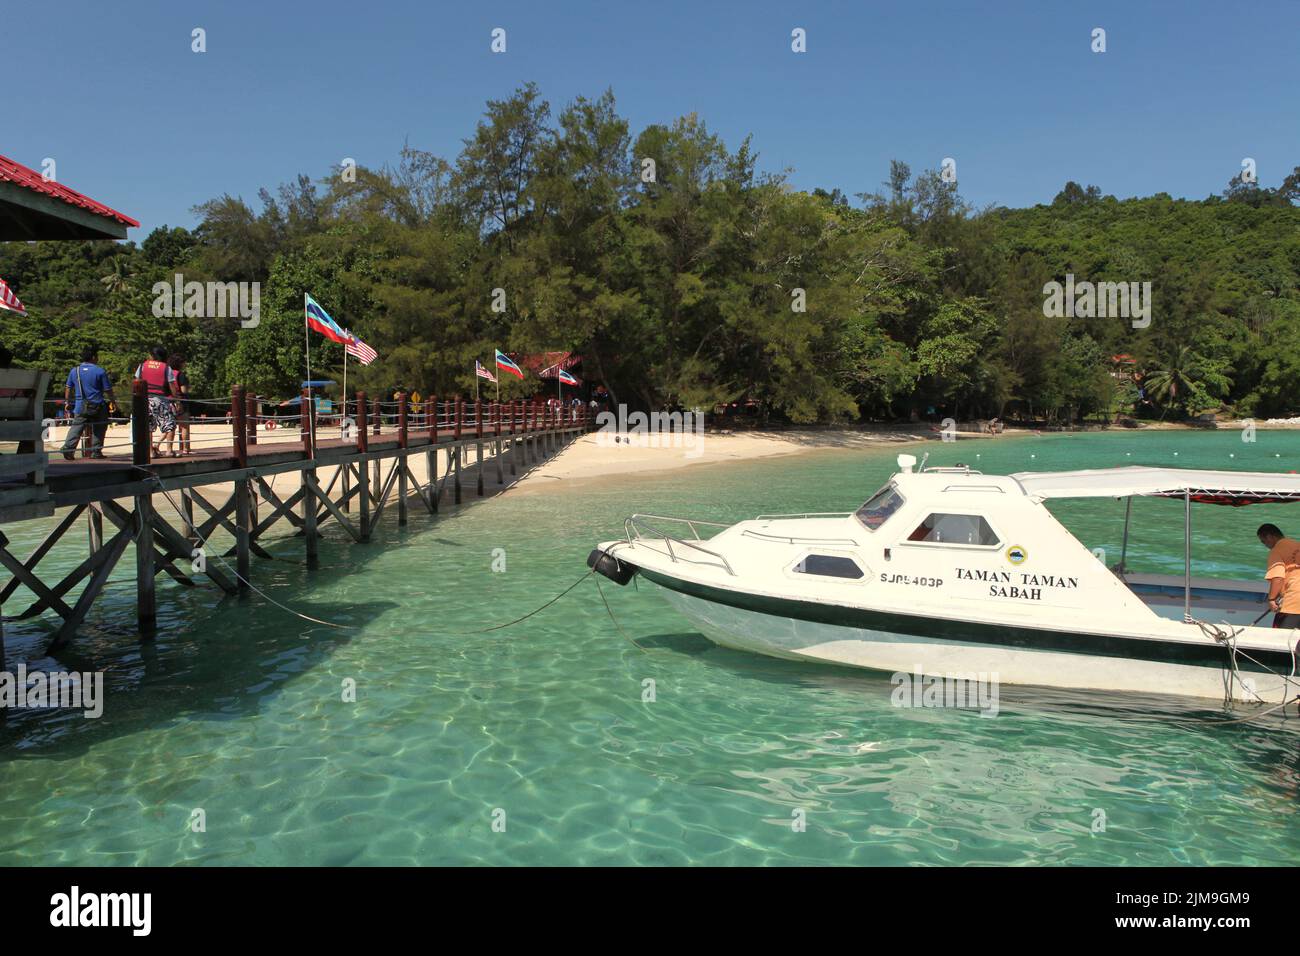 A tourist boat on the coastal water of Pulau Sapi (Sapi Island), a part of Tunku Abdul Rahman Park in Sabah, Malaysia. Stock Photo